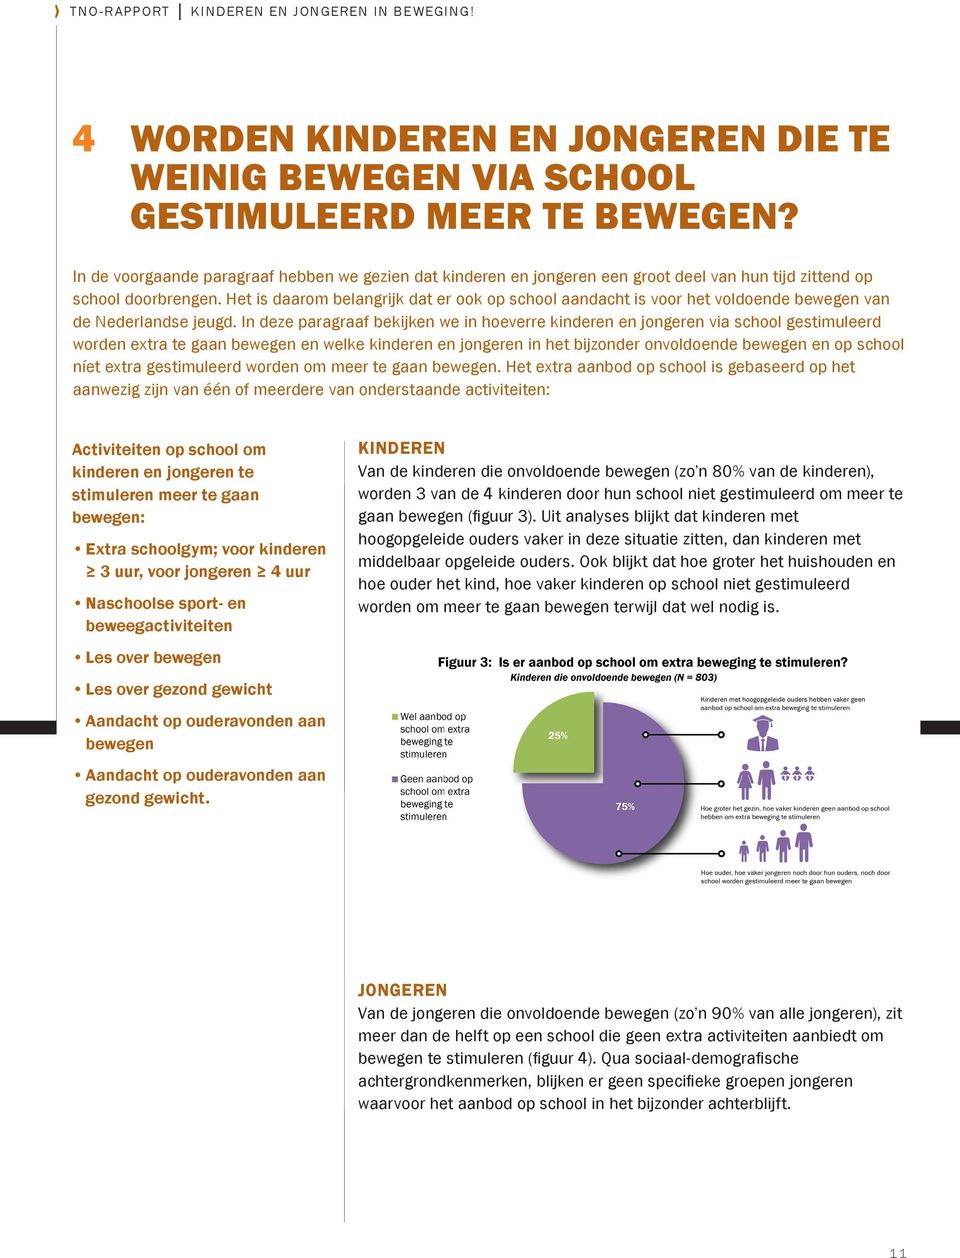 Het is daarom belangrijk dat er ook op school aandacht is voor het voldoende bewegen van de Nederlandse jeugd.